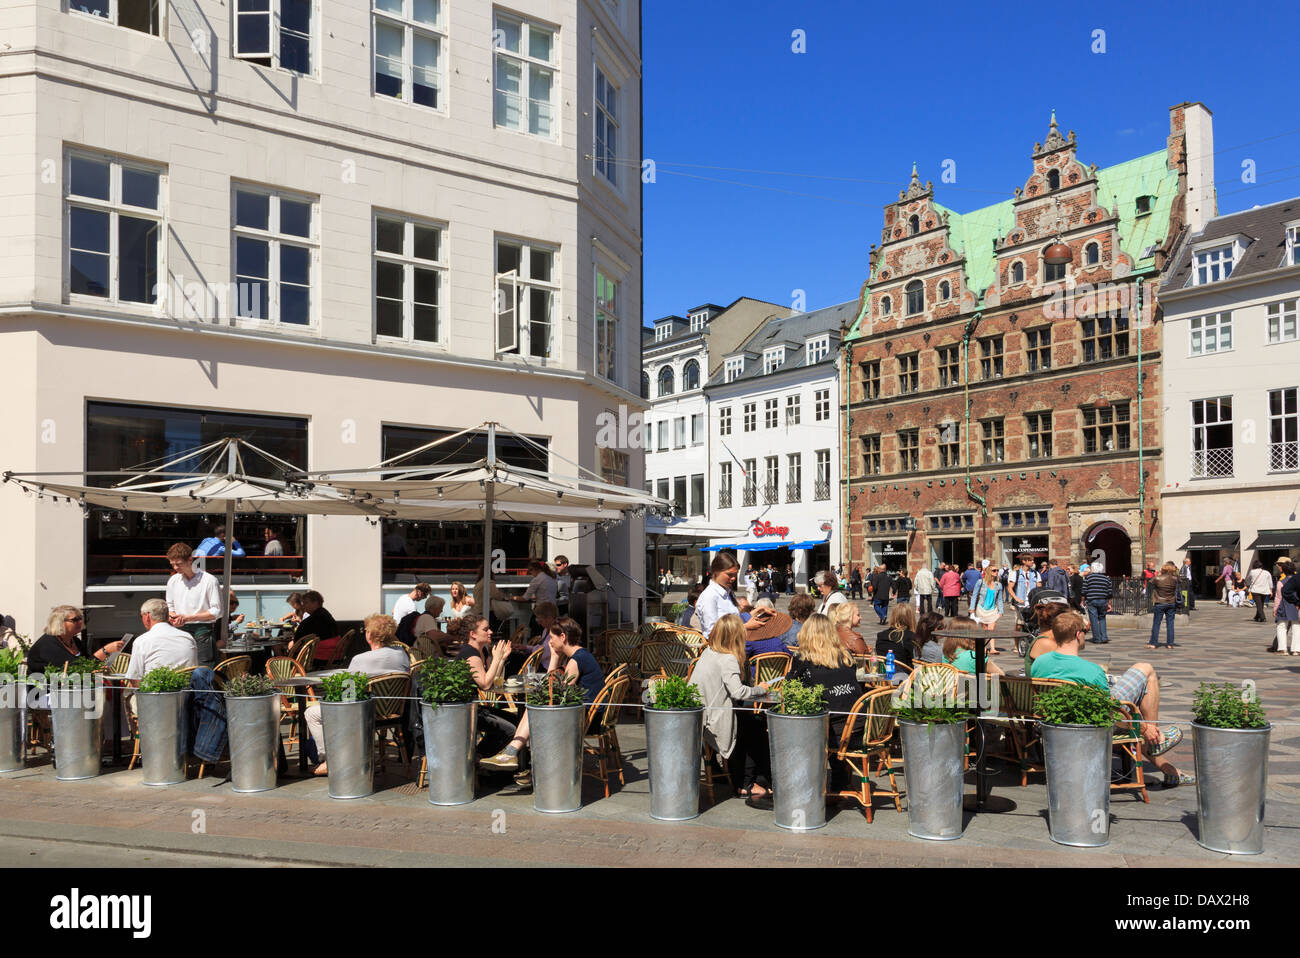 Café im Freien auf dem alten Amagertorv Platz, in dem die Gäste speisen können. Amager Torv, Kopenhagen, Neuseeland, Dänemark, Skandinavien Stockfoto